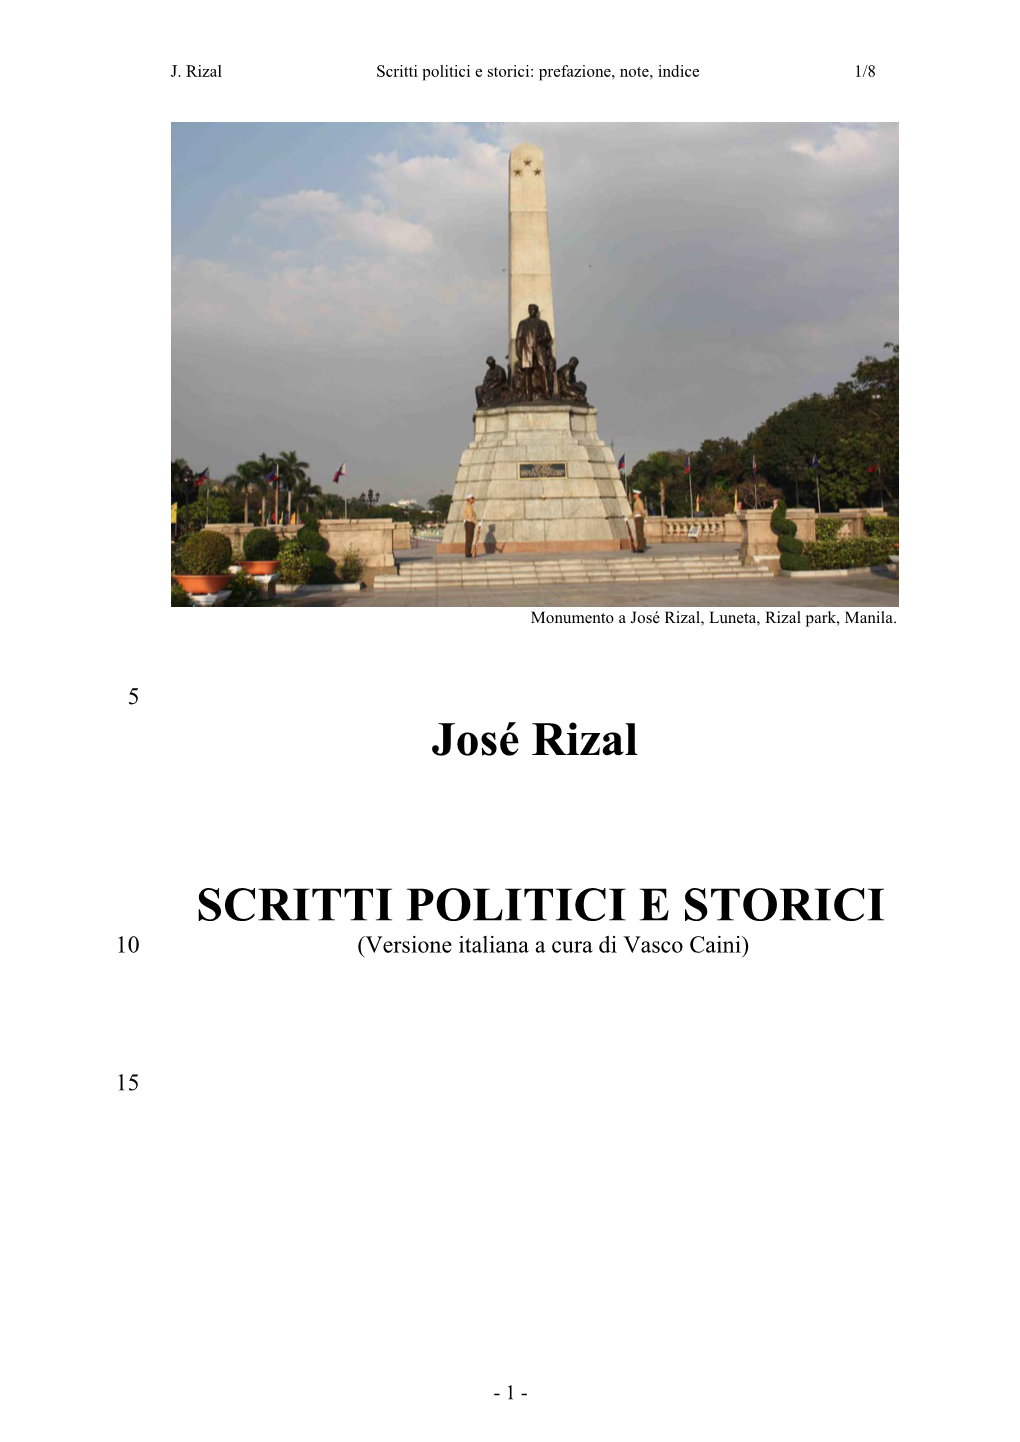 José Rizal SCRITTI POLITICI E STORICI